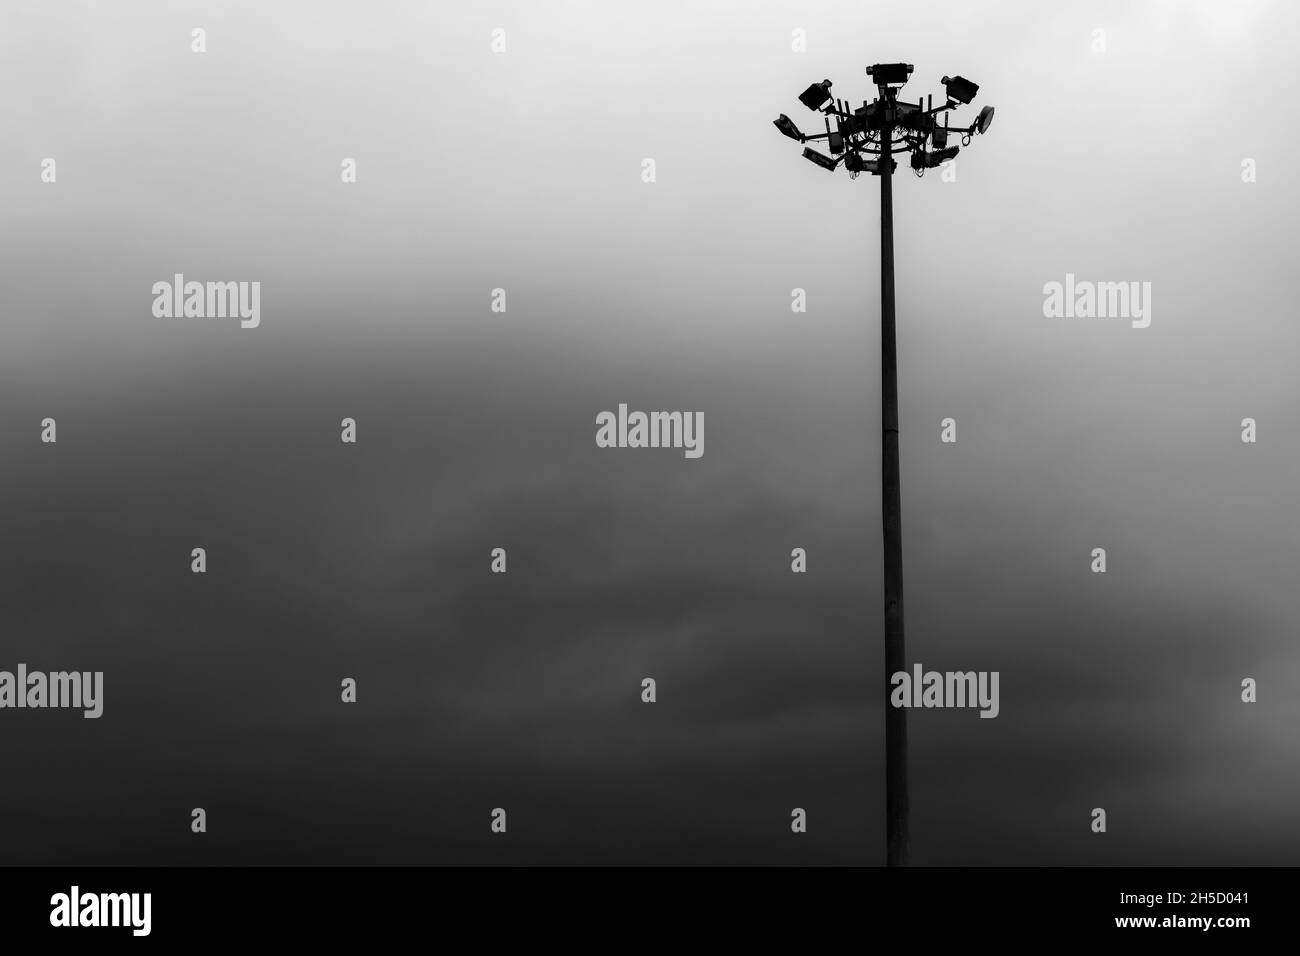 Scatto in scala di grigi di un'alta asta di illuminazione contro un cielo nuvoloso Foto Stock